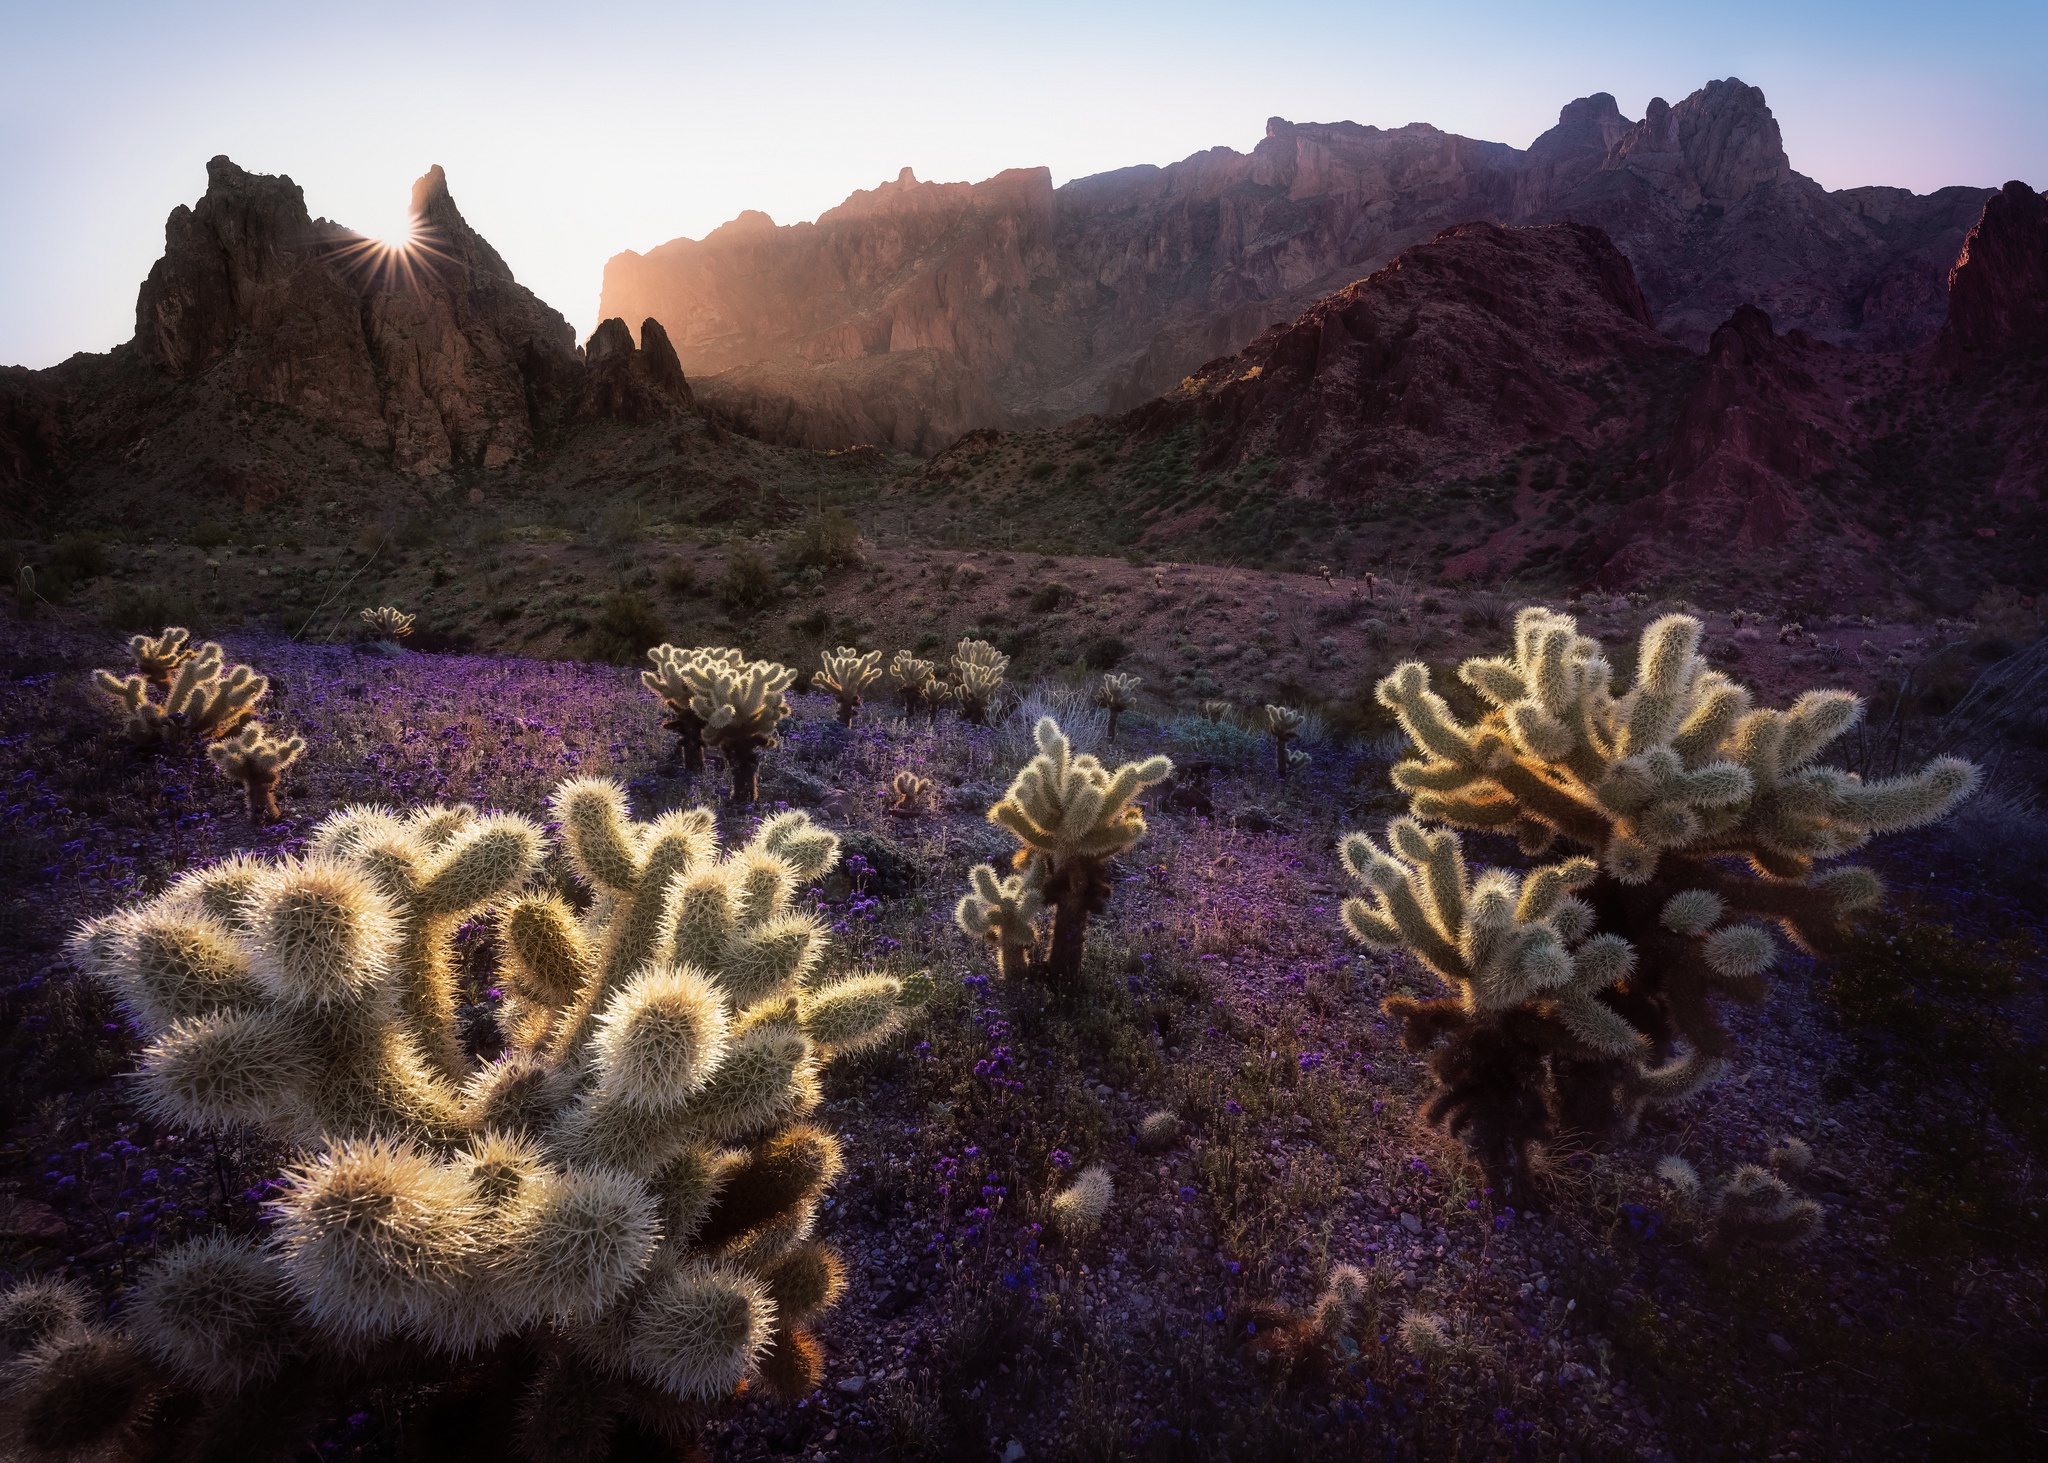 General 2048x1463 cactus plants nature landscape sunrise outdoors rocks